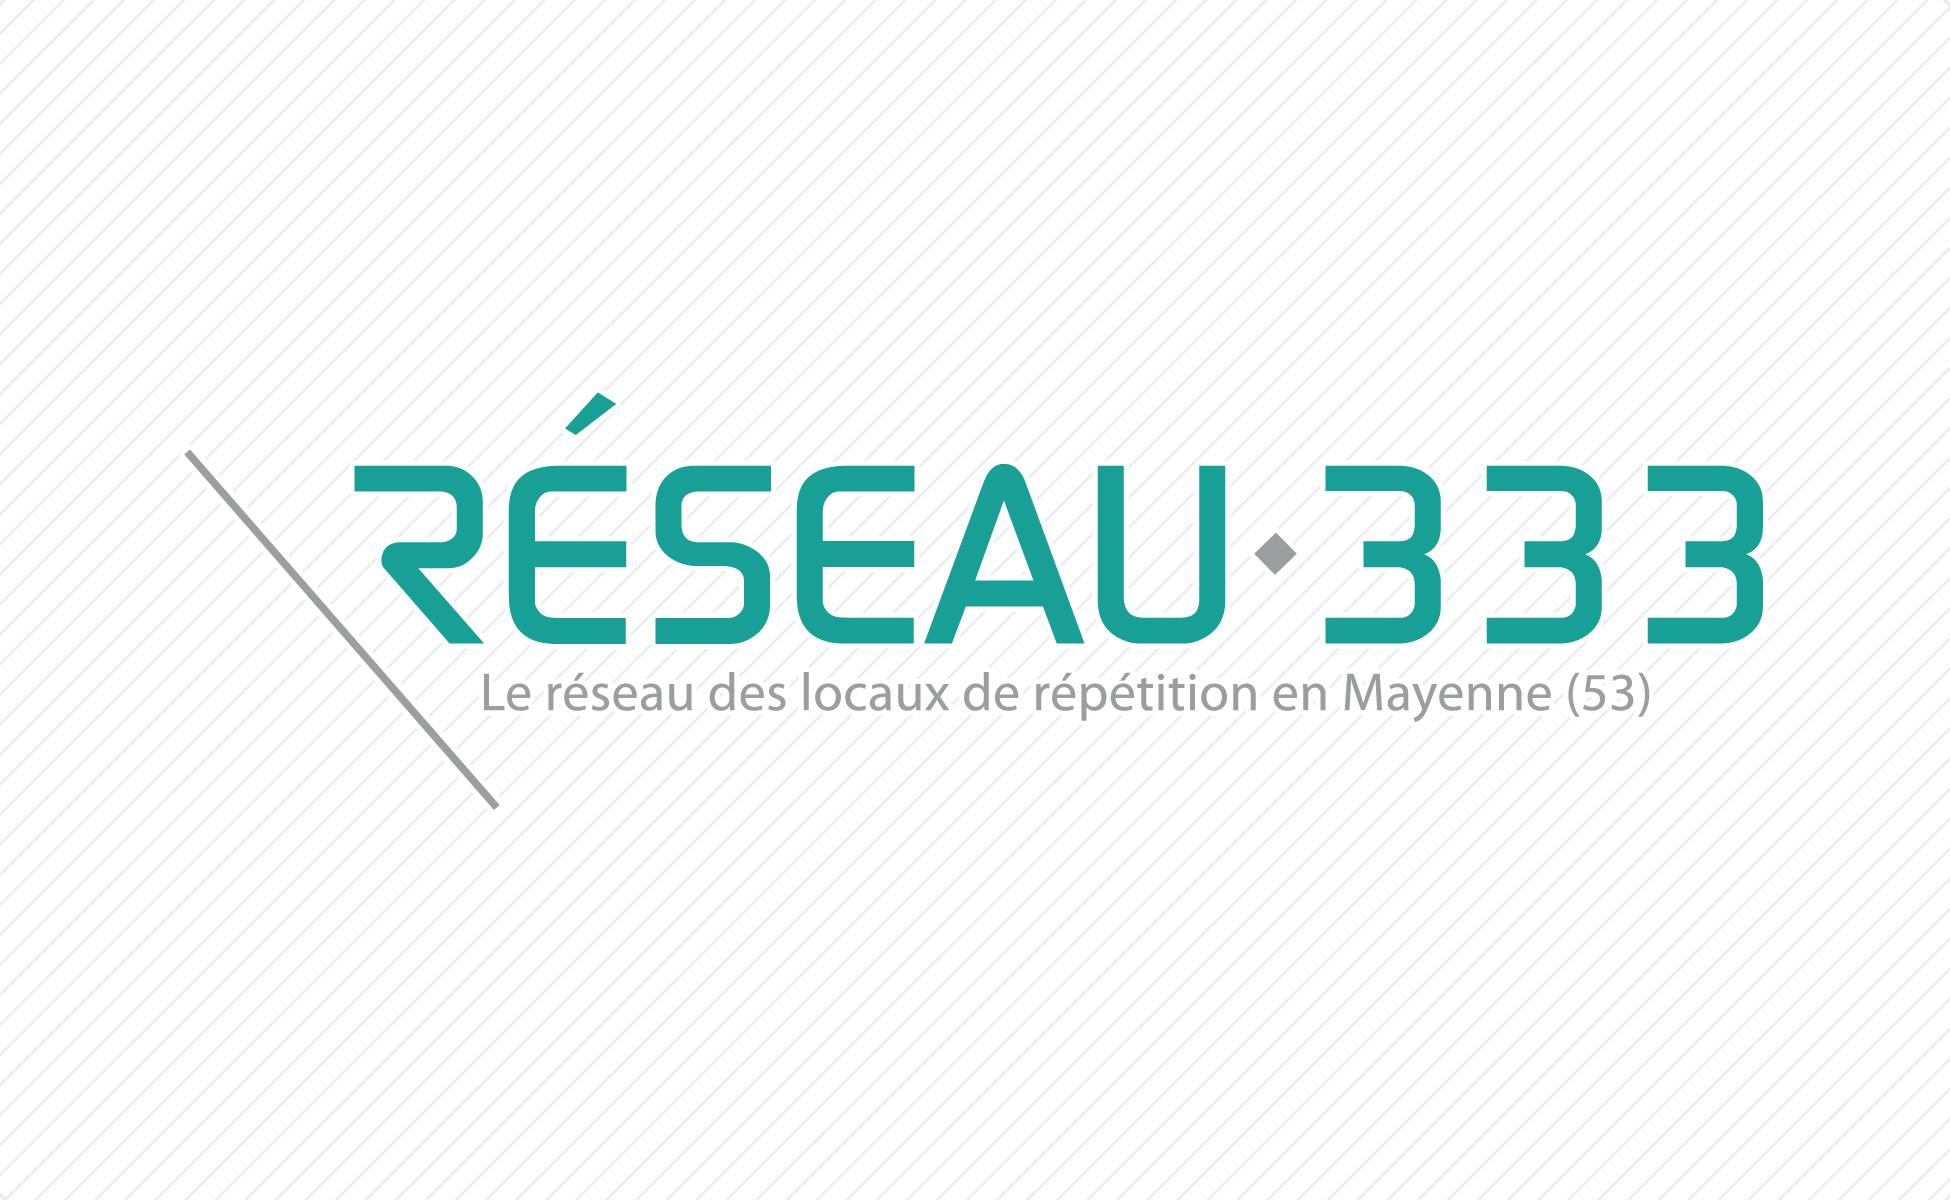 Slider 1 - Logo Réseau 333